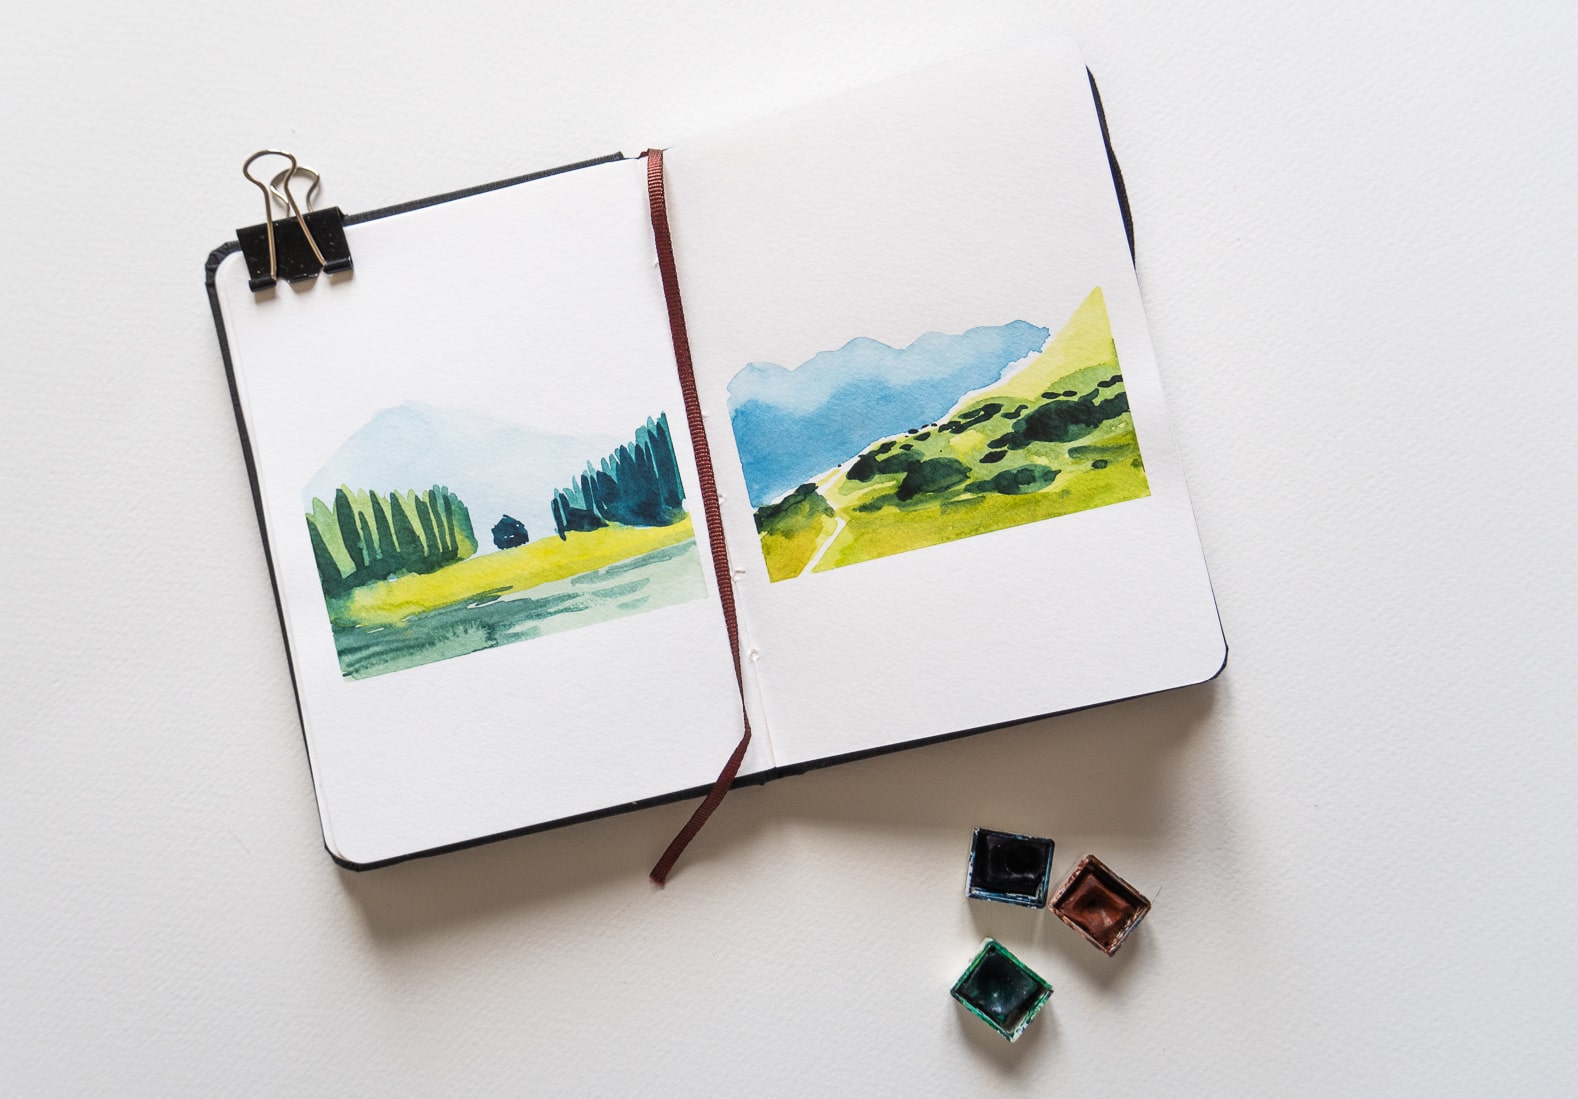 carnet de croquis avec deux paysages minimalistes à l'aquarelle